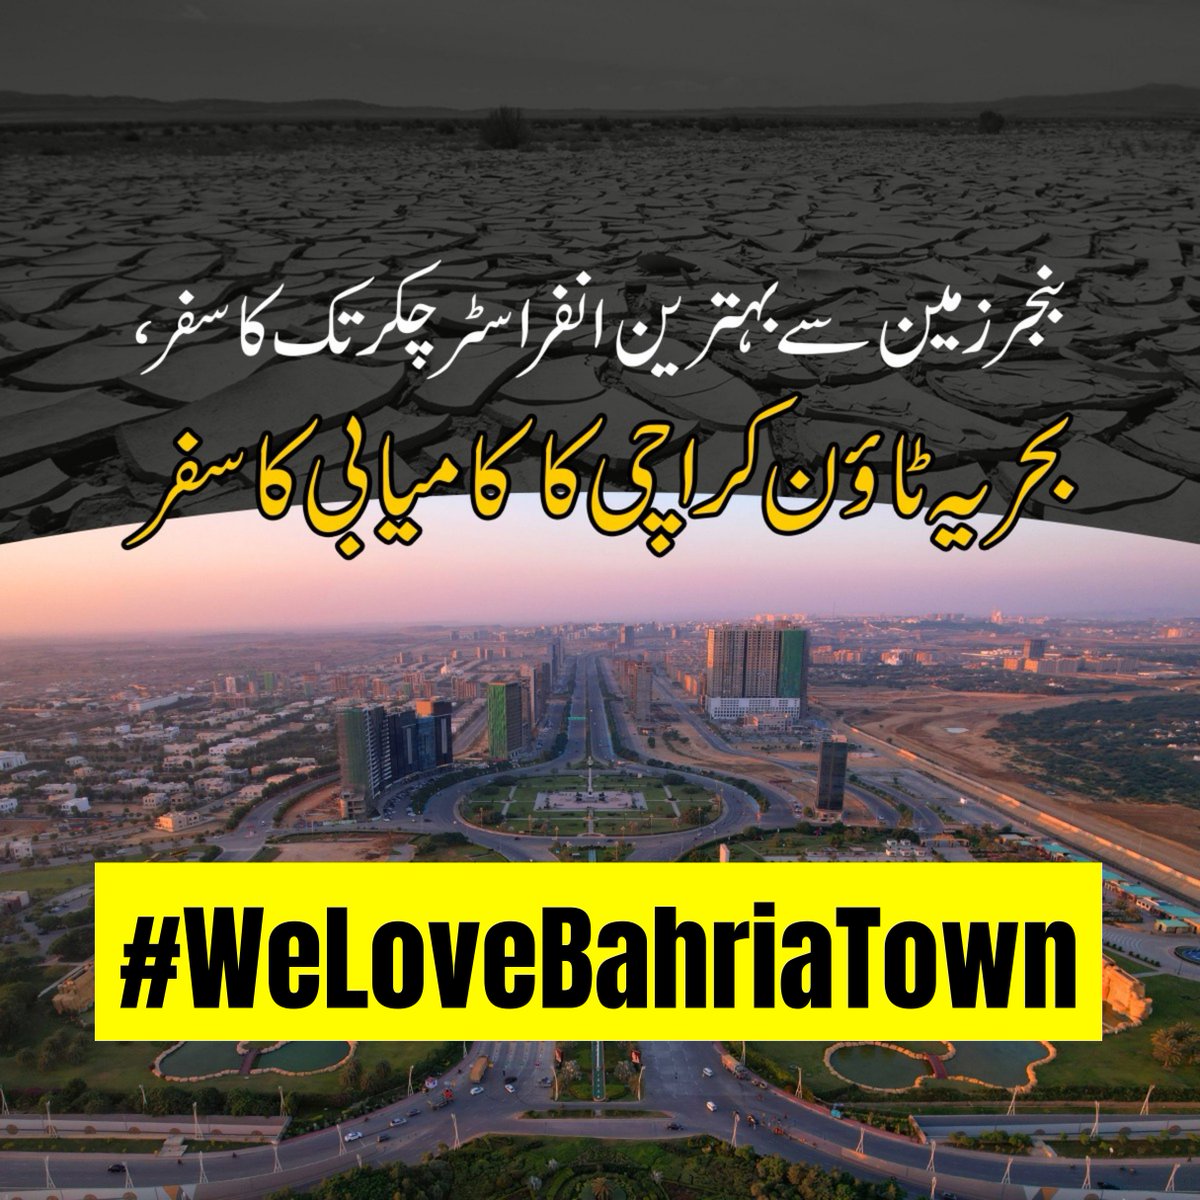 بحریہ ٹاؤن کراچی پاکستان کی واحد سوسائٹی ہے جہاں پر بجلی کی لوڈشیڈنگ نہیں ہوتی، جو کہ وہاں کے لوگوں کیلئے بڑی نعمت ہے

#BahriaTownKarachi #BahriaTown #MalikRiaz #WeLoveMalikRiaz #WeStandWithMalikRiaz
#WeLoveBahriaTown #WeStandWithBahriaTown